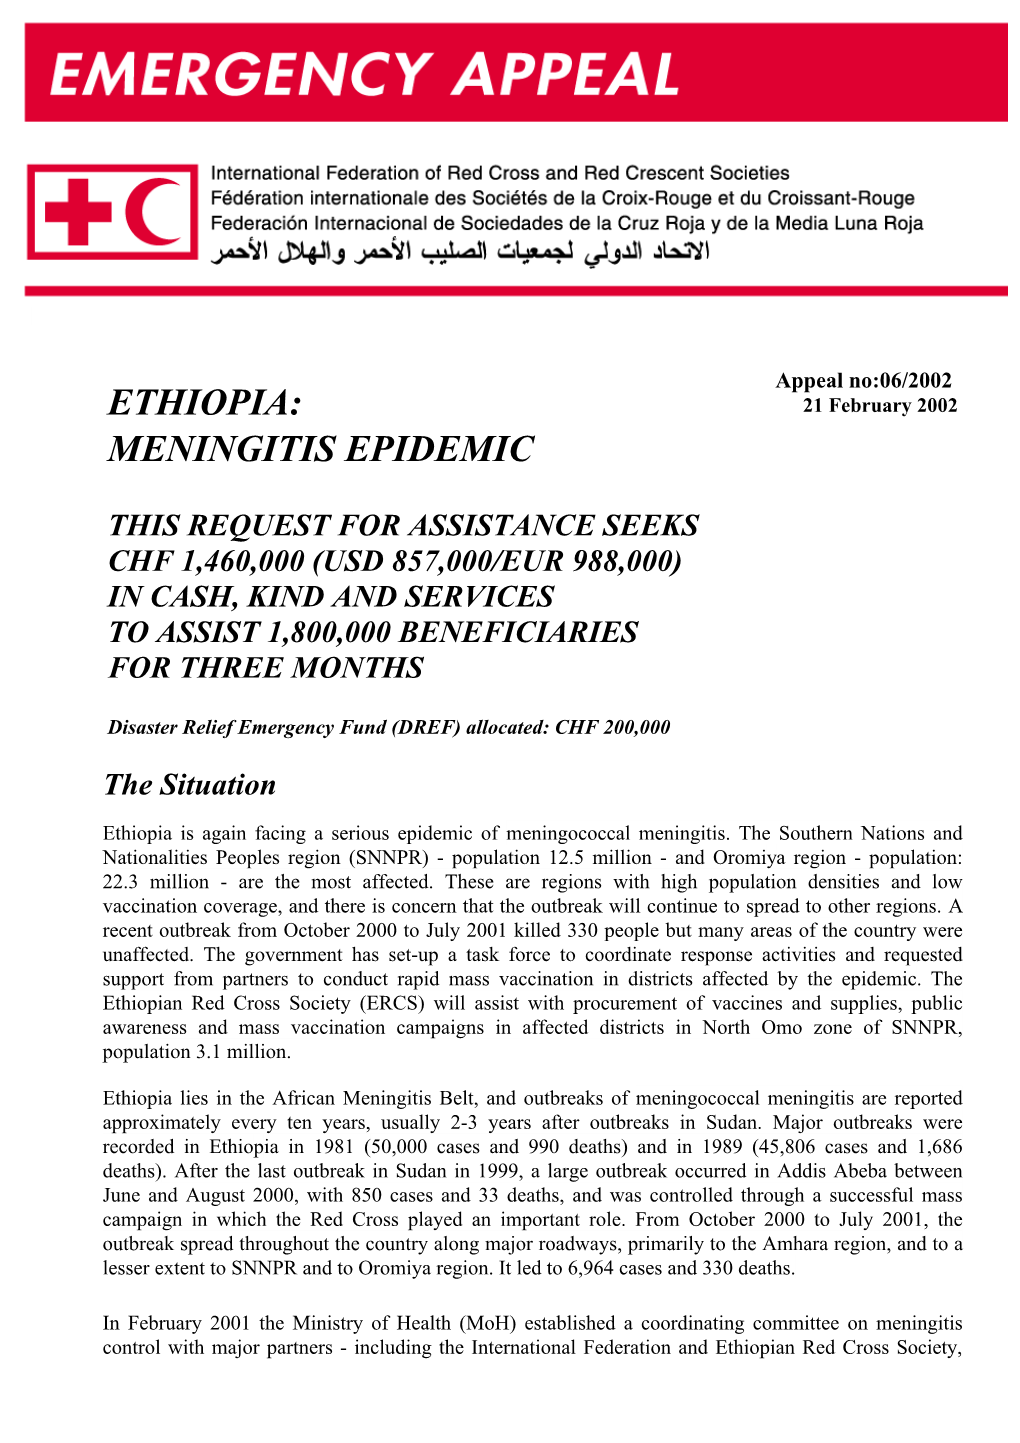 Ethiopia Meningitis Epidemic Emergency Appeal